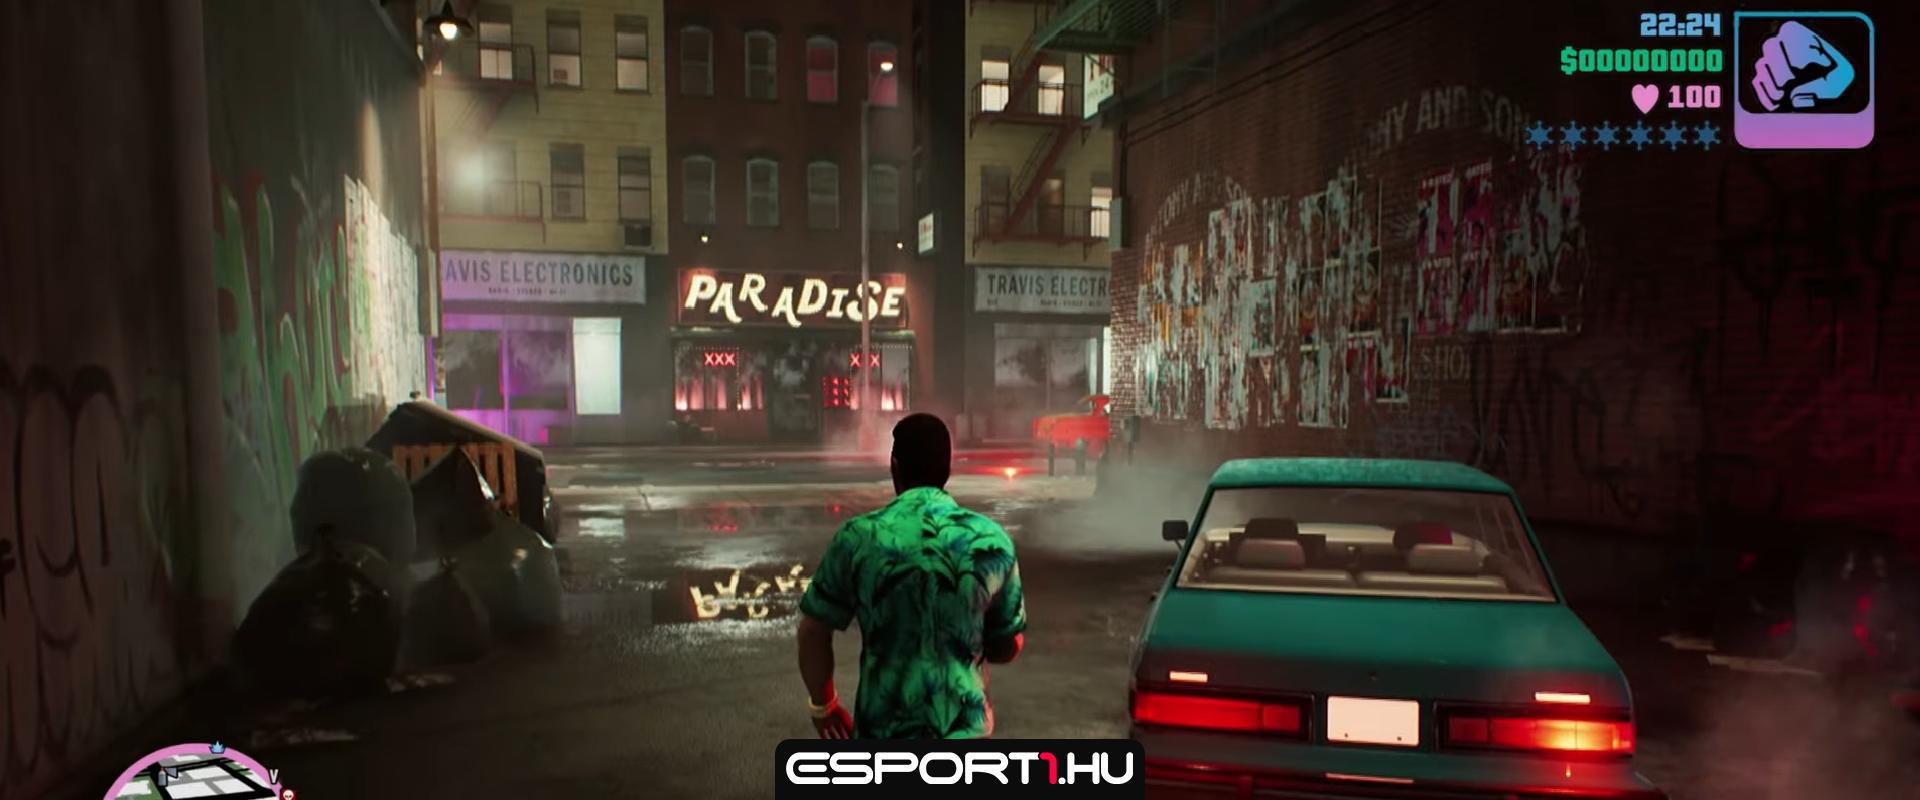 Így festene a GTA: Vice City remake Unreal Engine 5-ben elkészítve